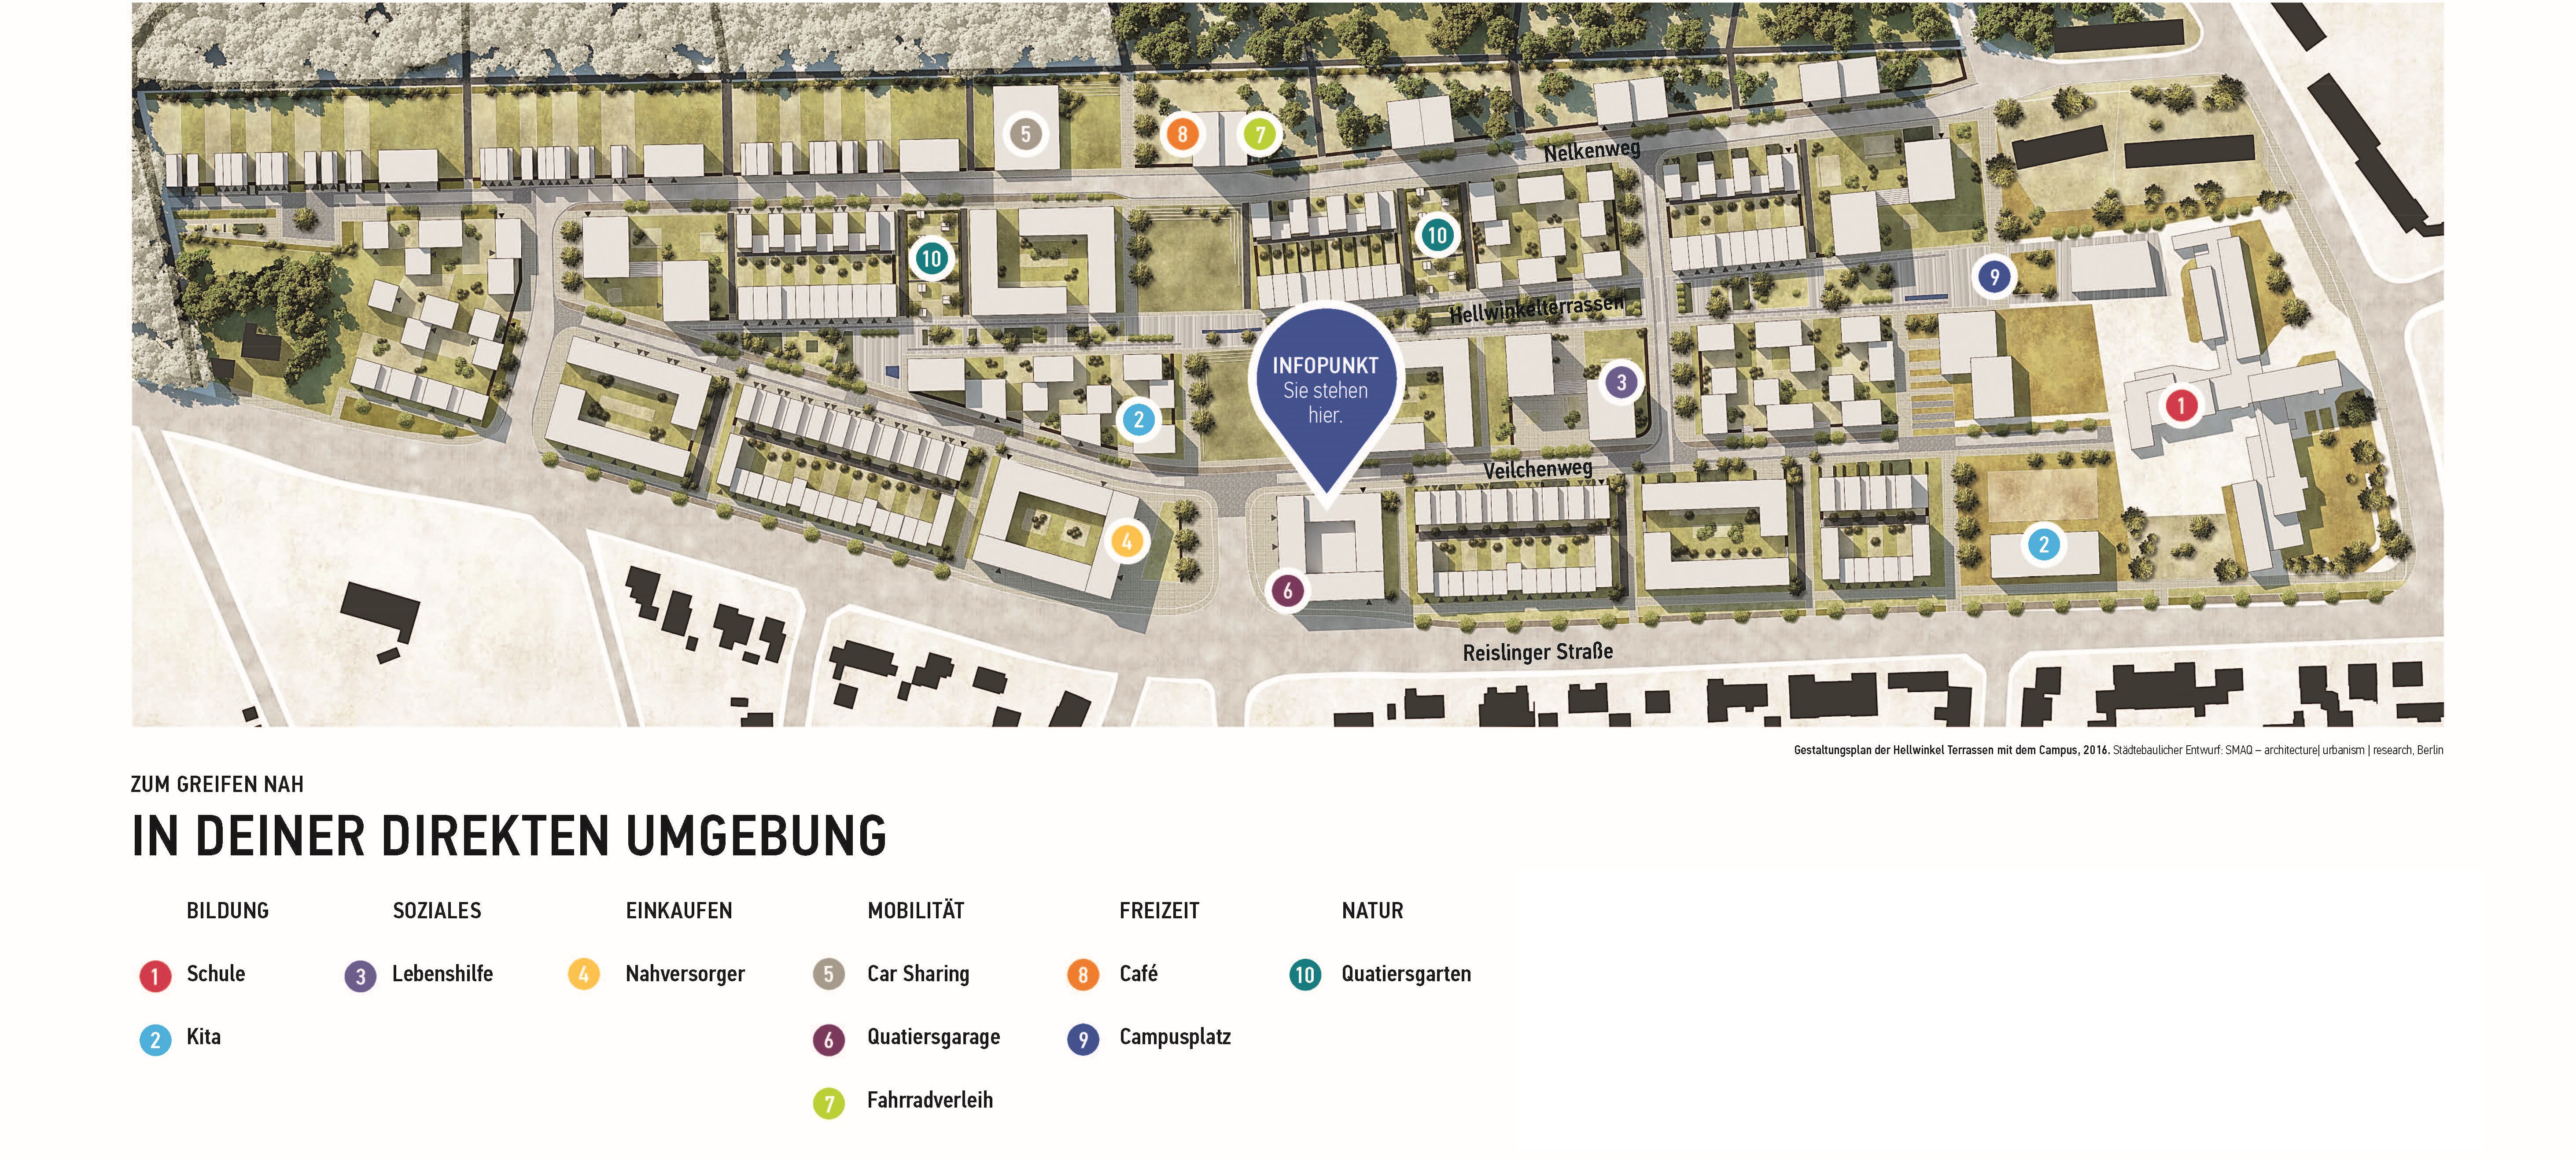 Übersichtskarte der Hellwinkel Terrassen mit Lage der Einrichtungen zu Bildung, Soziales, Einkaufen, Mobilität, Freizeit und Natur